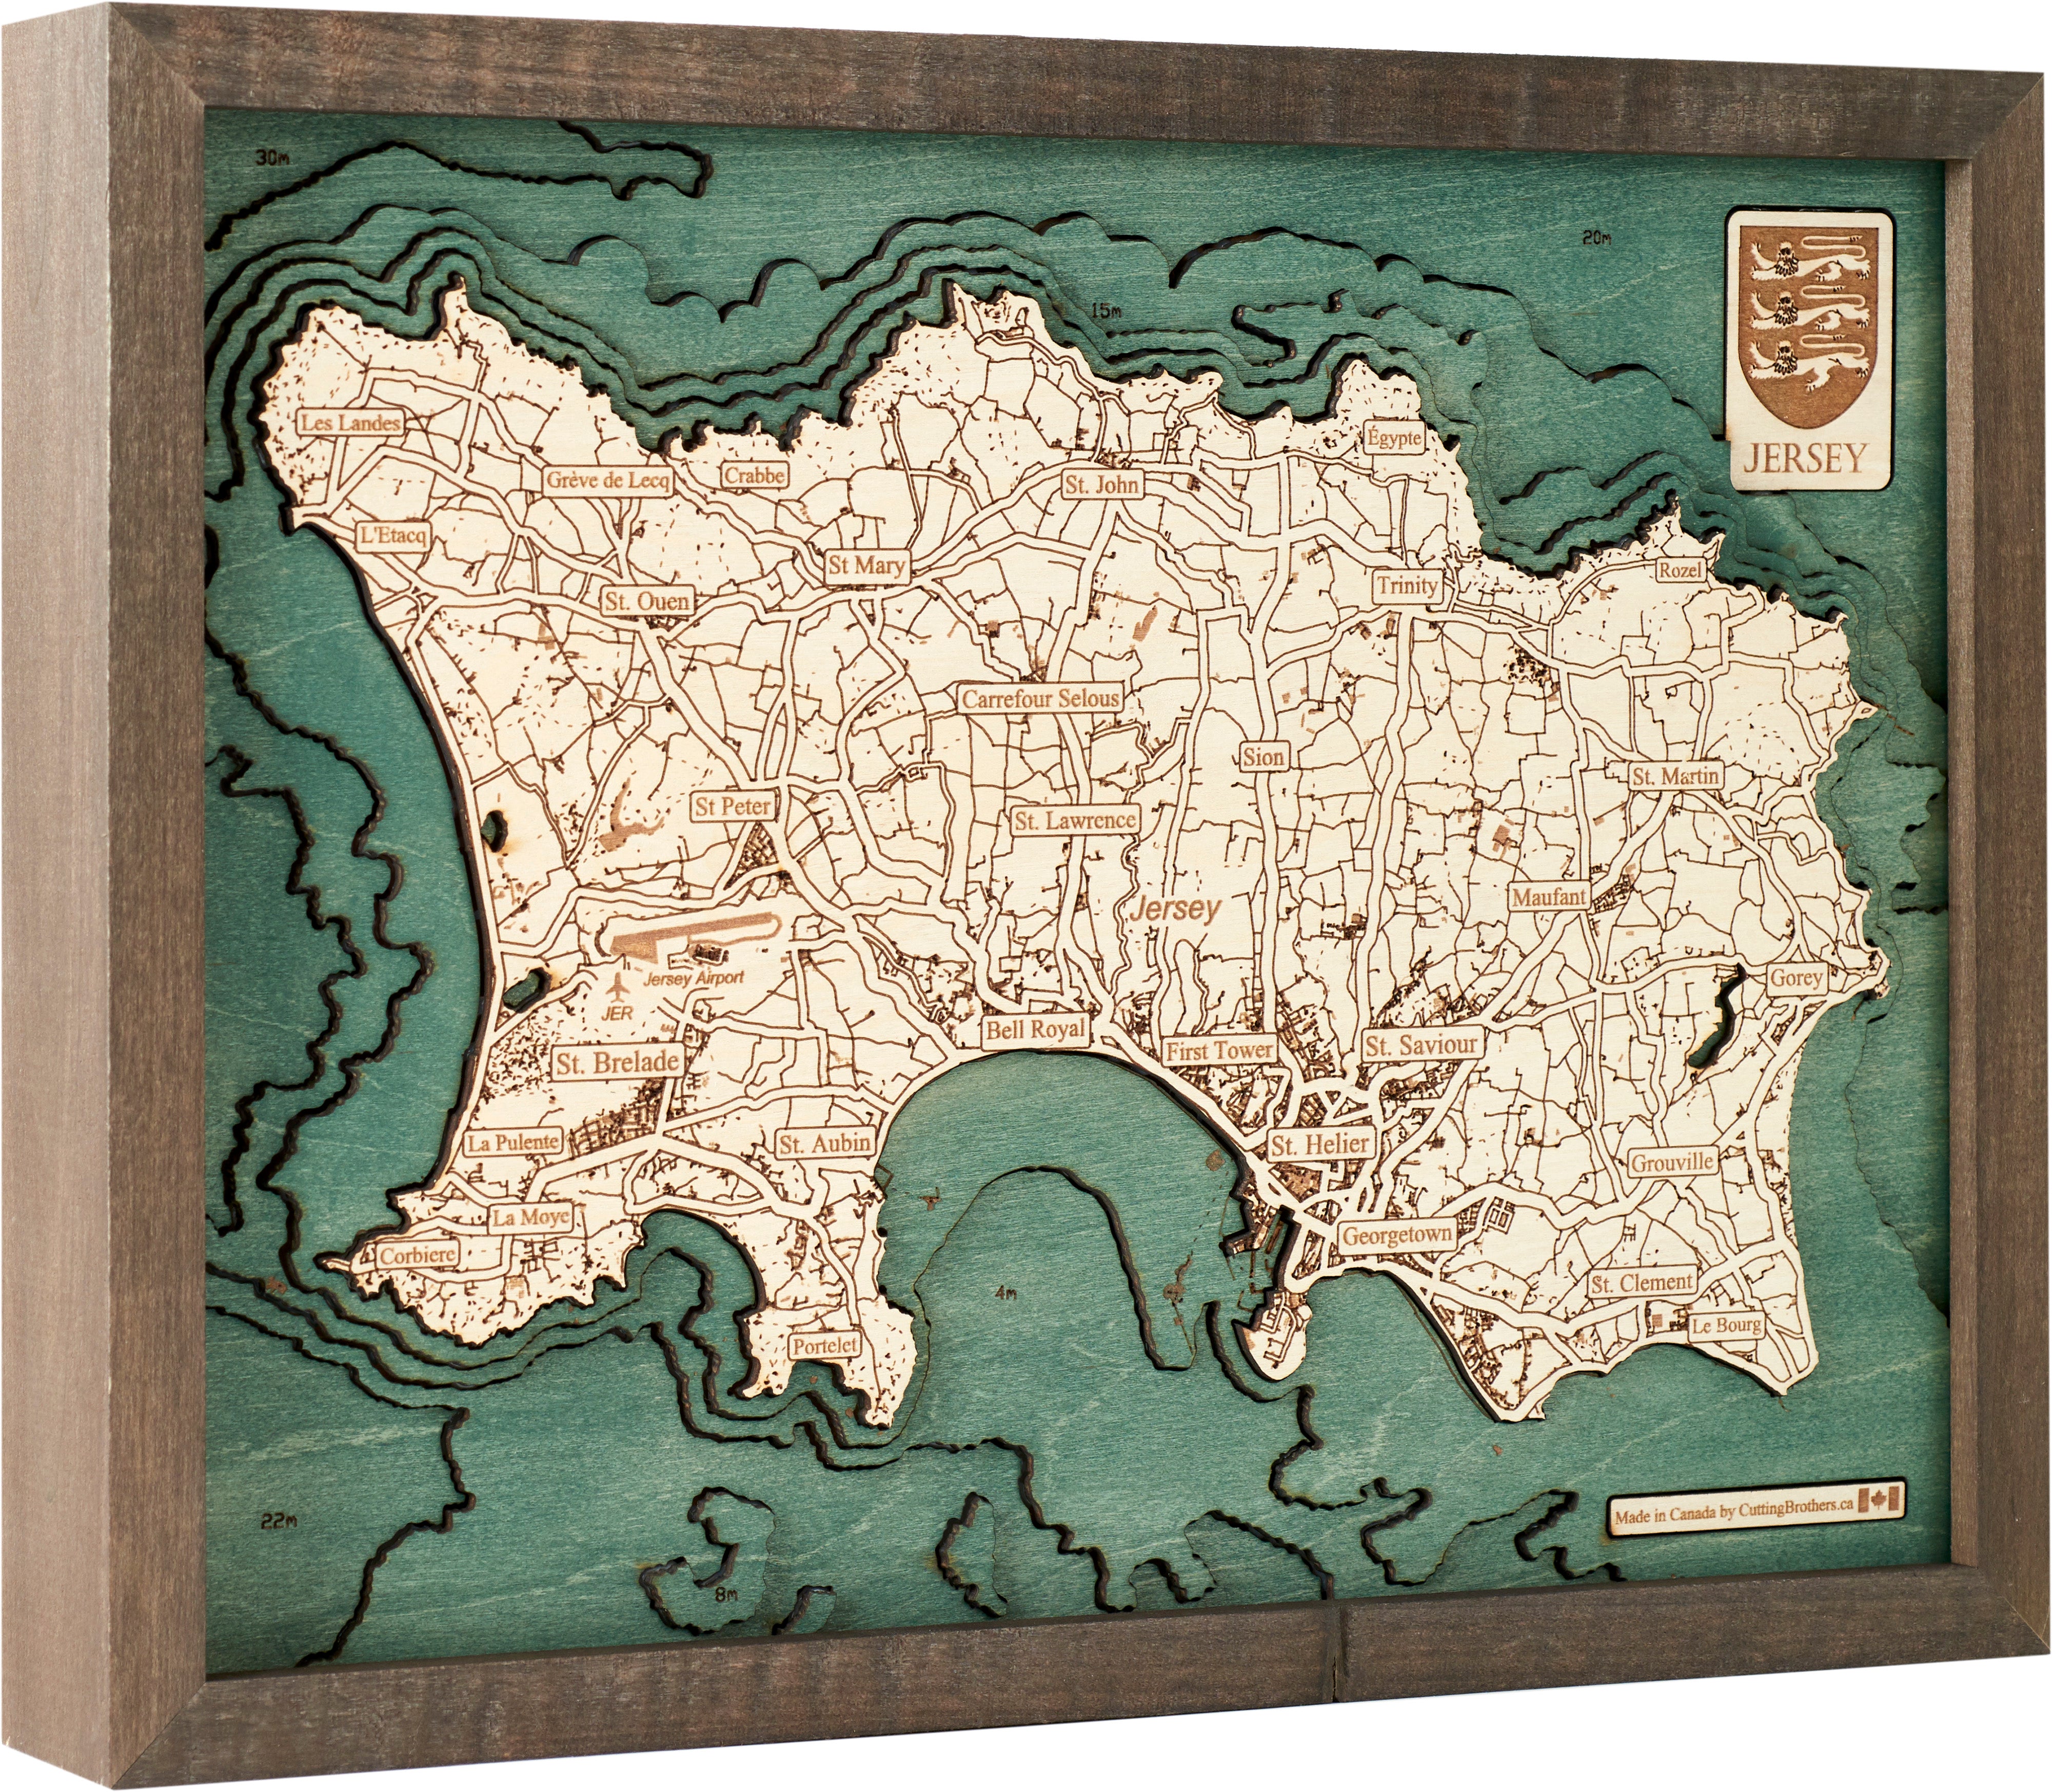 JERSEY 3D Holz Wandkarte - Version S